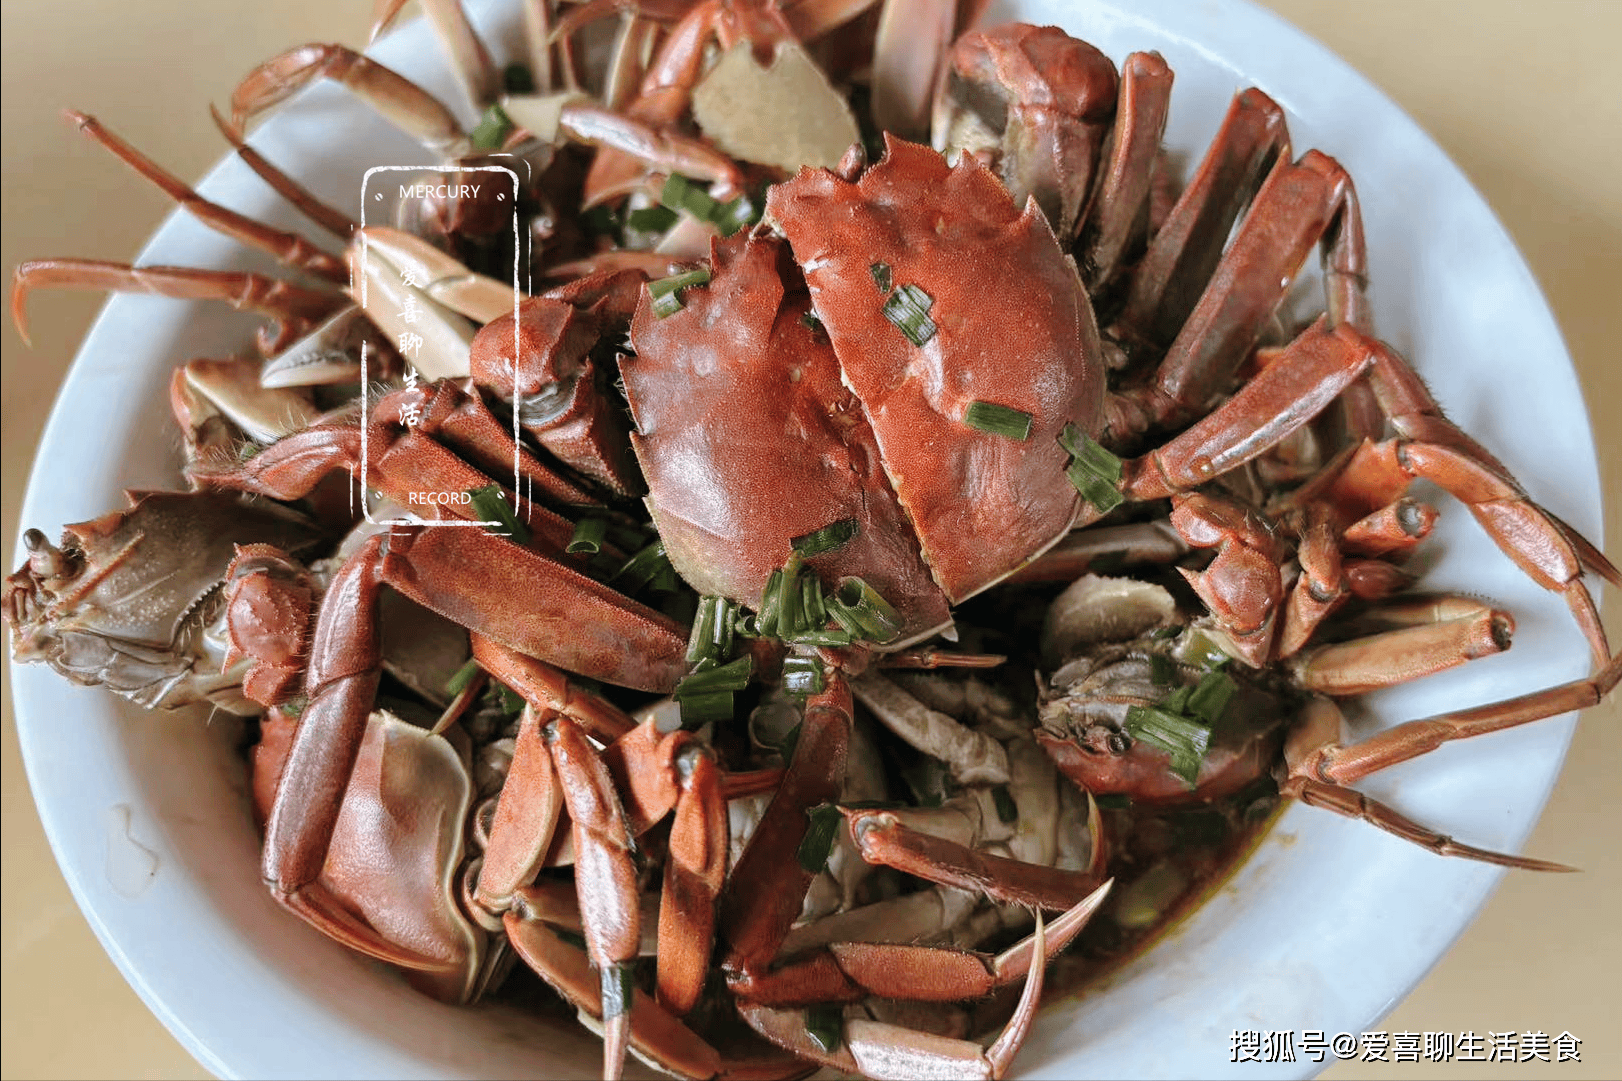 8个螃蟹一把毛豆，简单一蒸10分钟出锅，尝蟹品豆，真是人间美味呀！